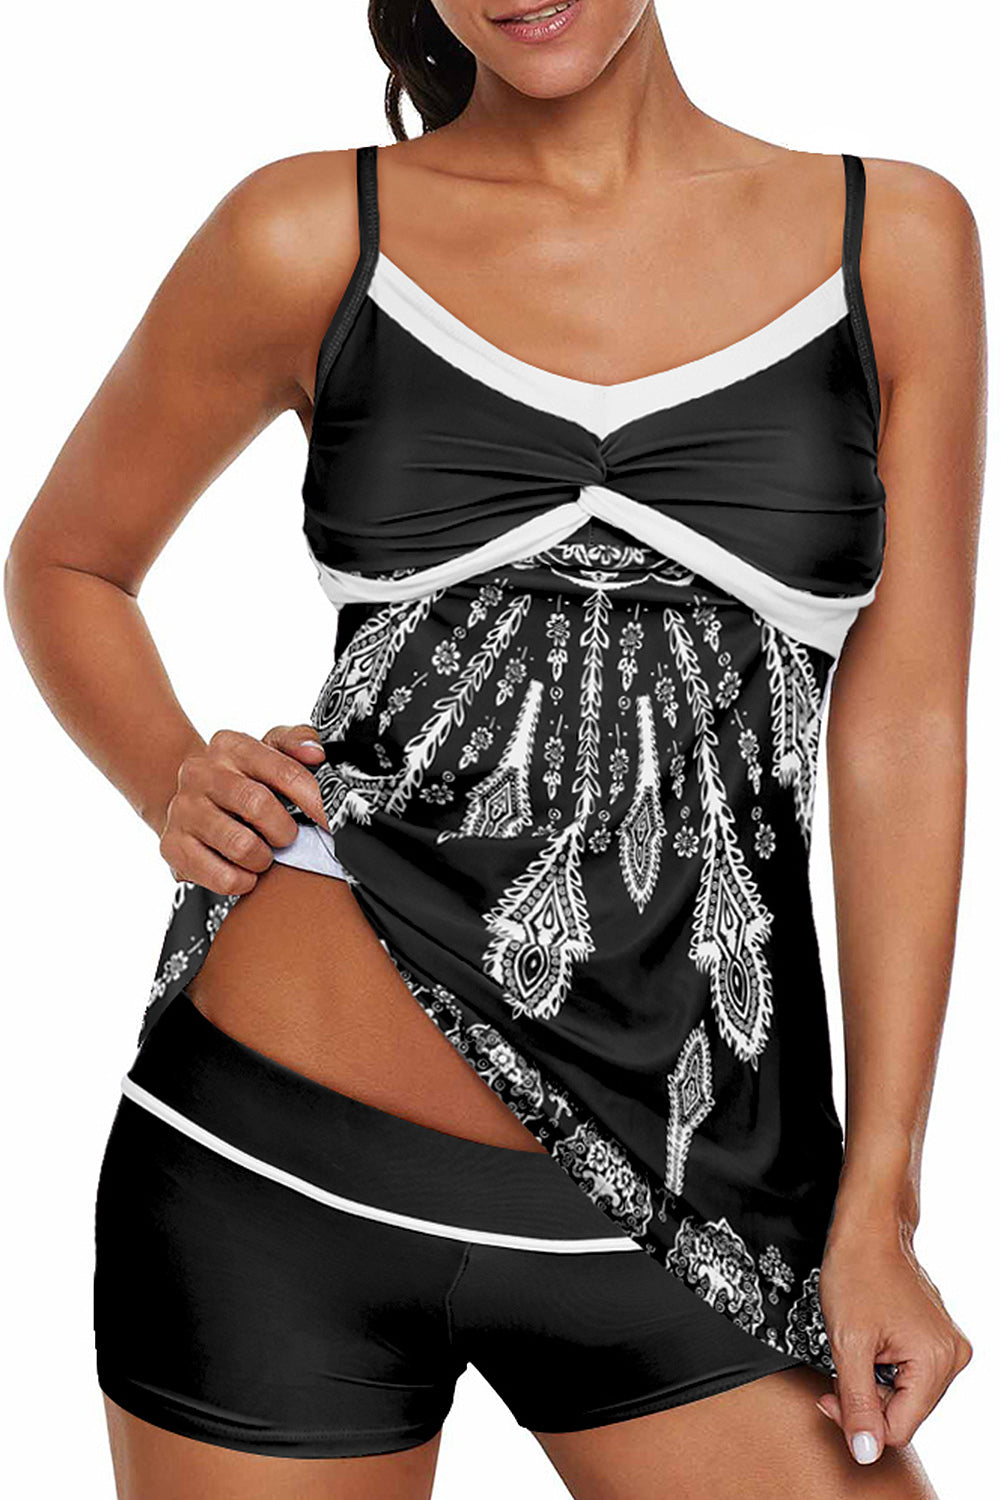 Schwarzer, verdrehter, plissierter, ausgestellter Tankini-Badeanzug im Brustbereich